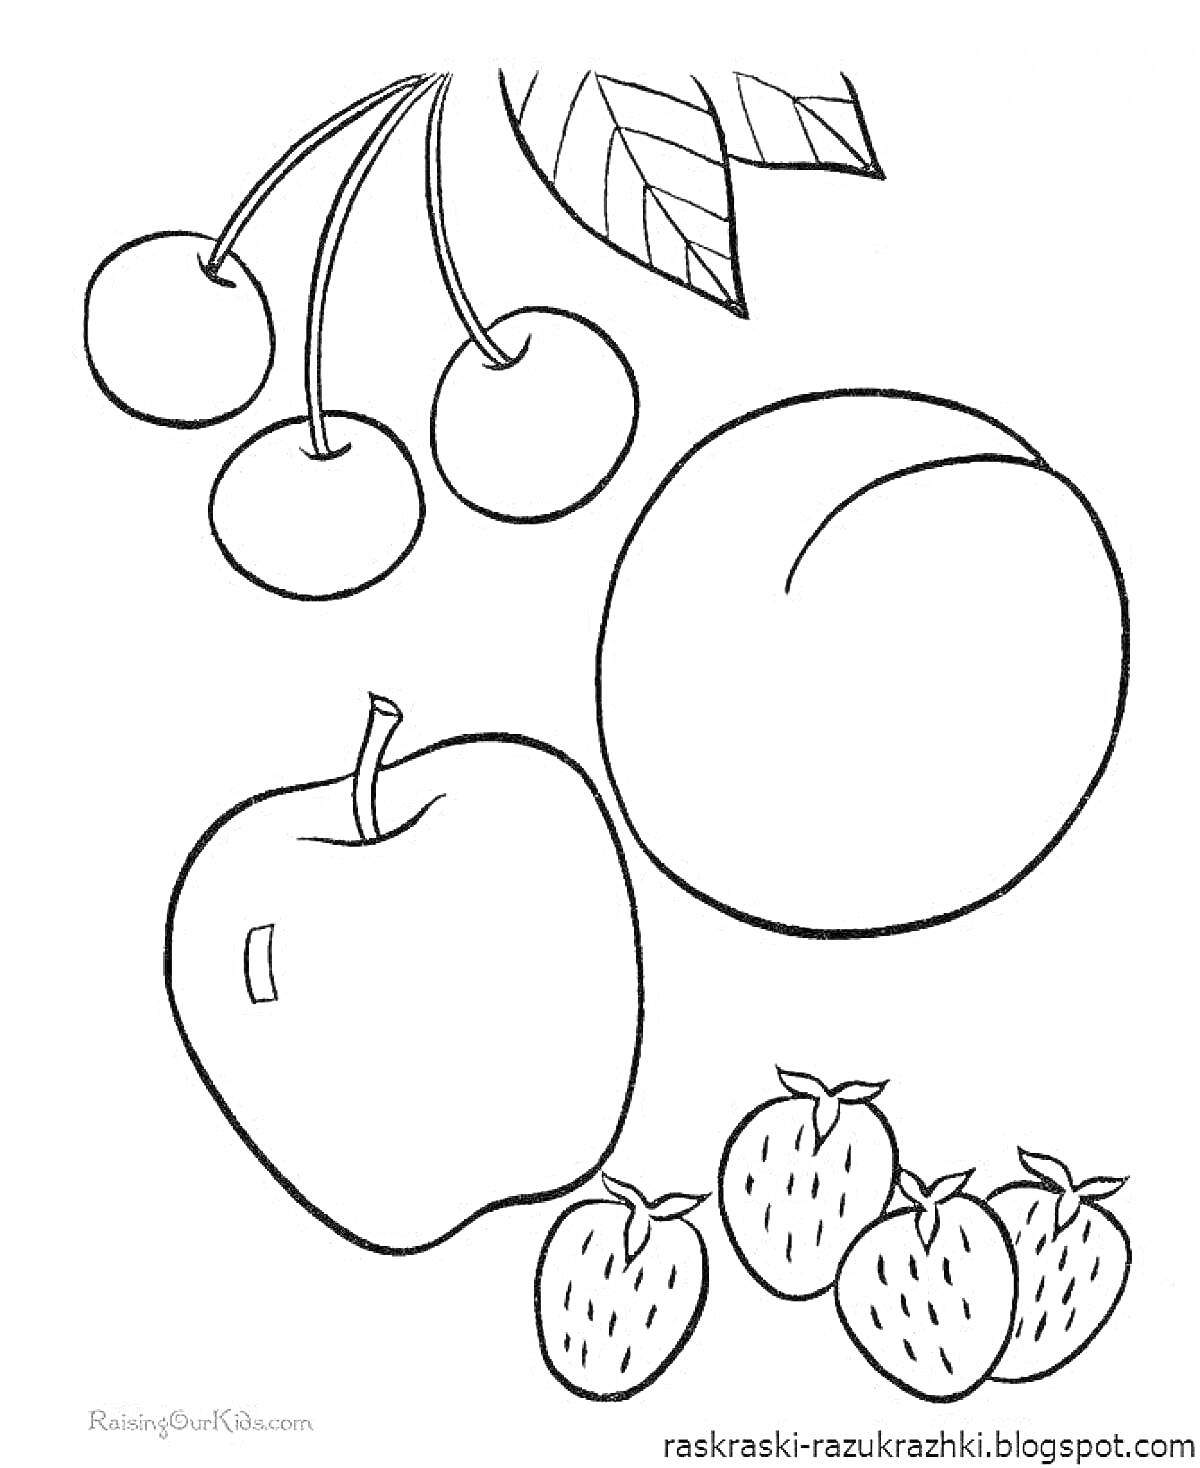 Раскраска Вишня, персик, яблоко, клубника и листья